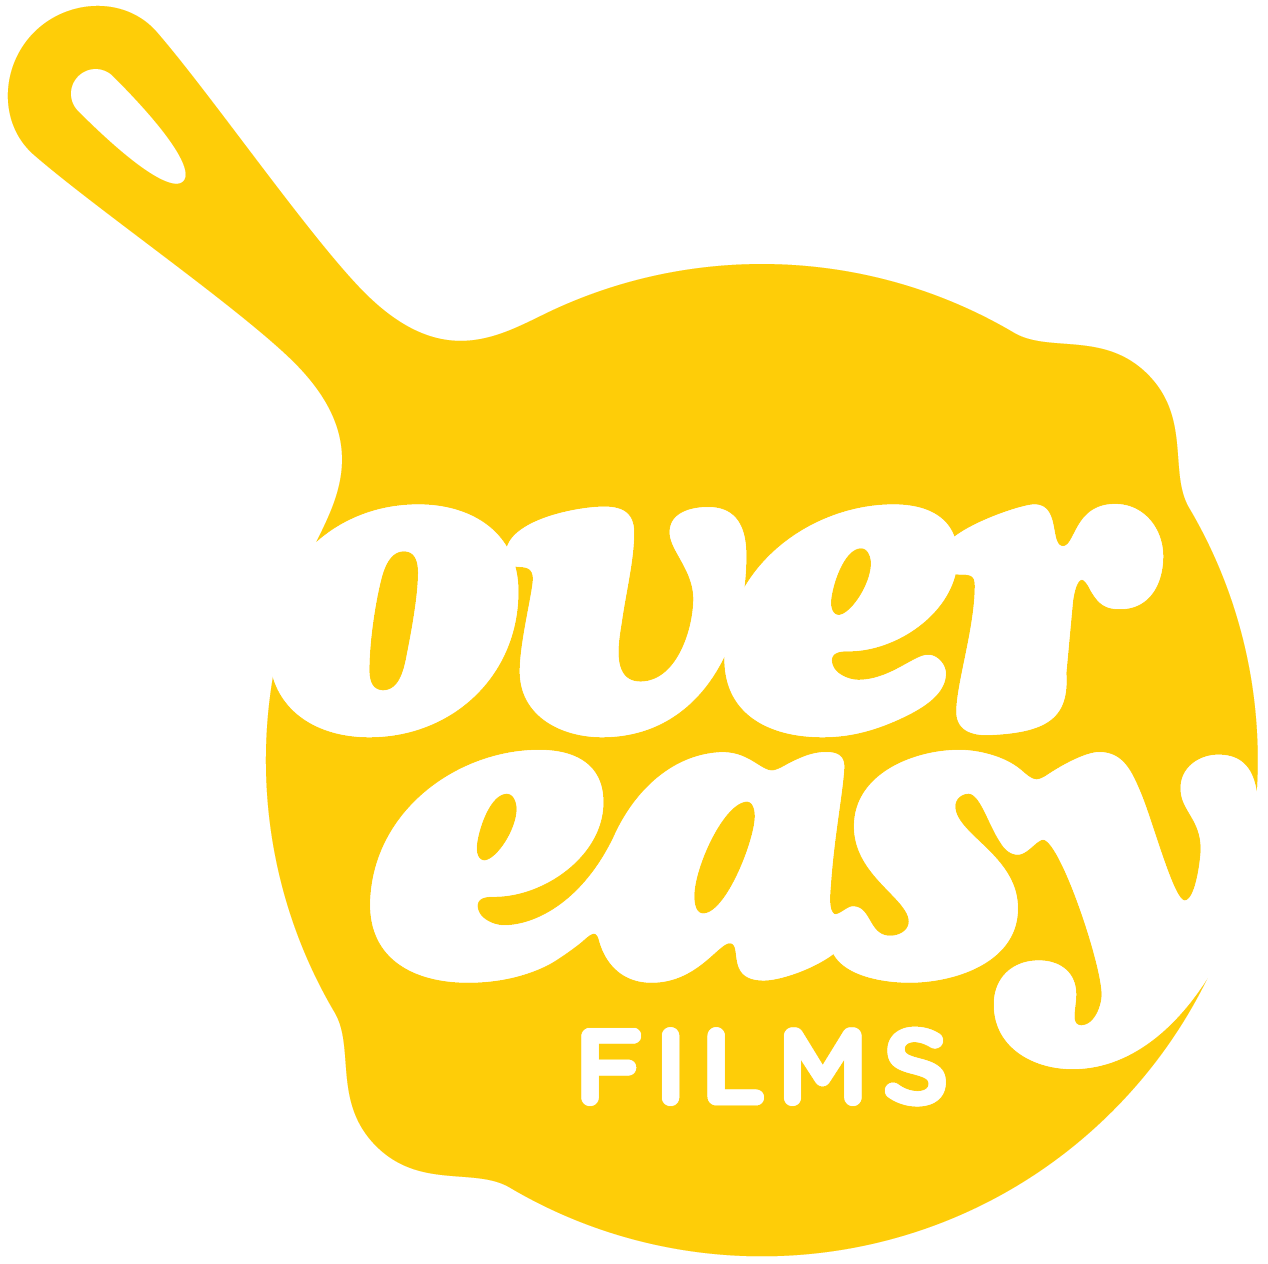 Over Easy Films